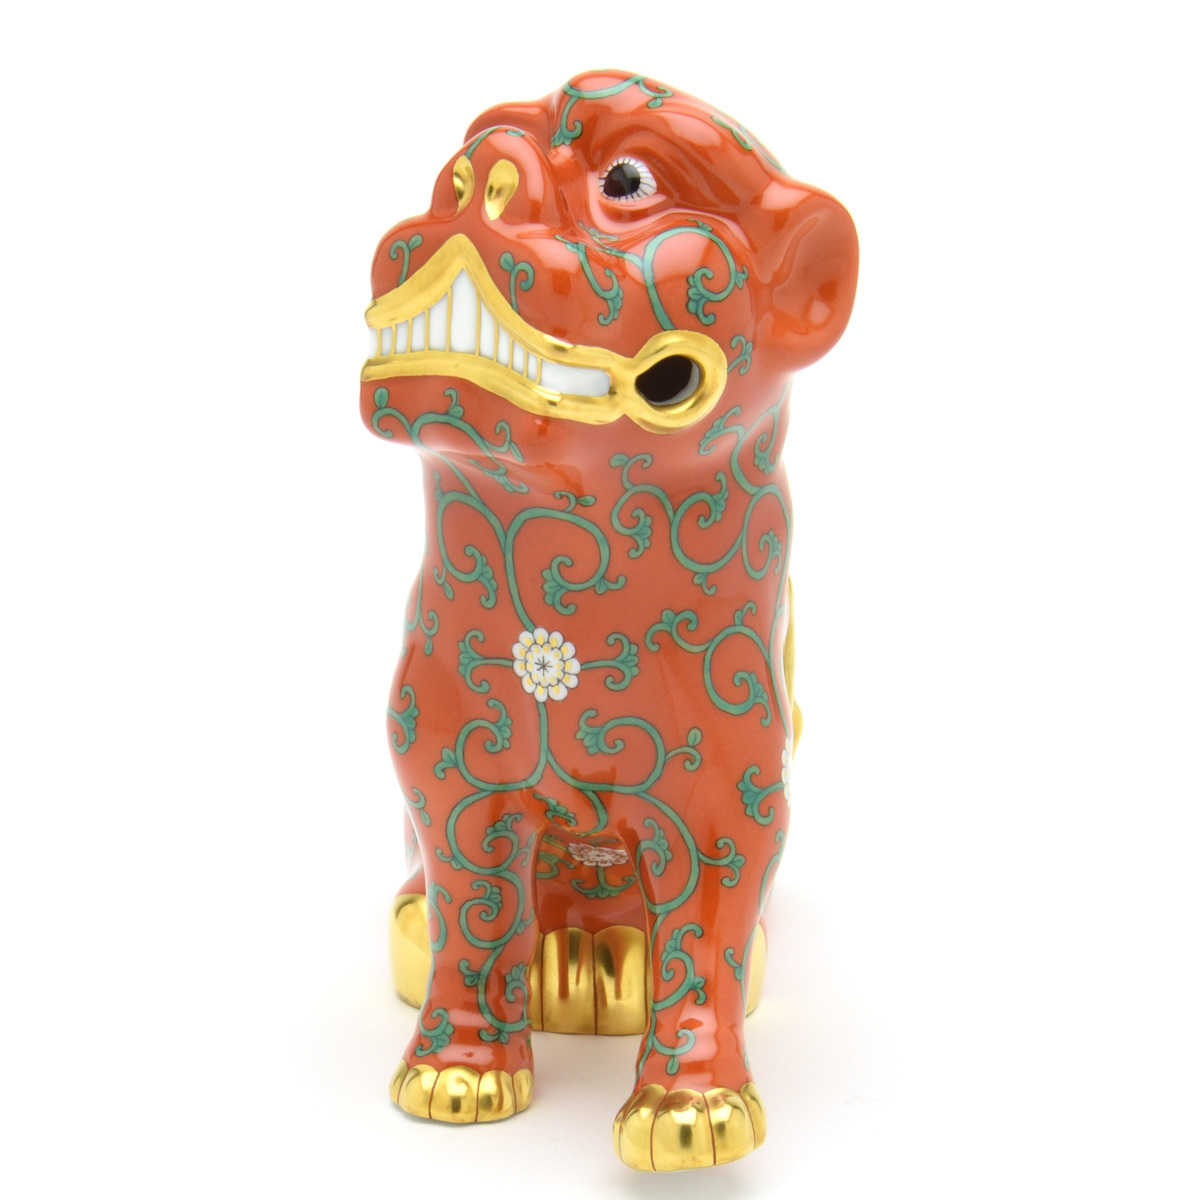 ヘレンド(Herend) 狛犬(ペア) 西安の赤 こまいぬ 手描き 磁器製 フィギュリン 置物 飾り物 ハンガリー製 新品_画像9